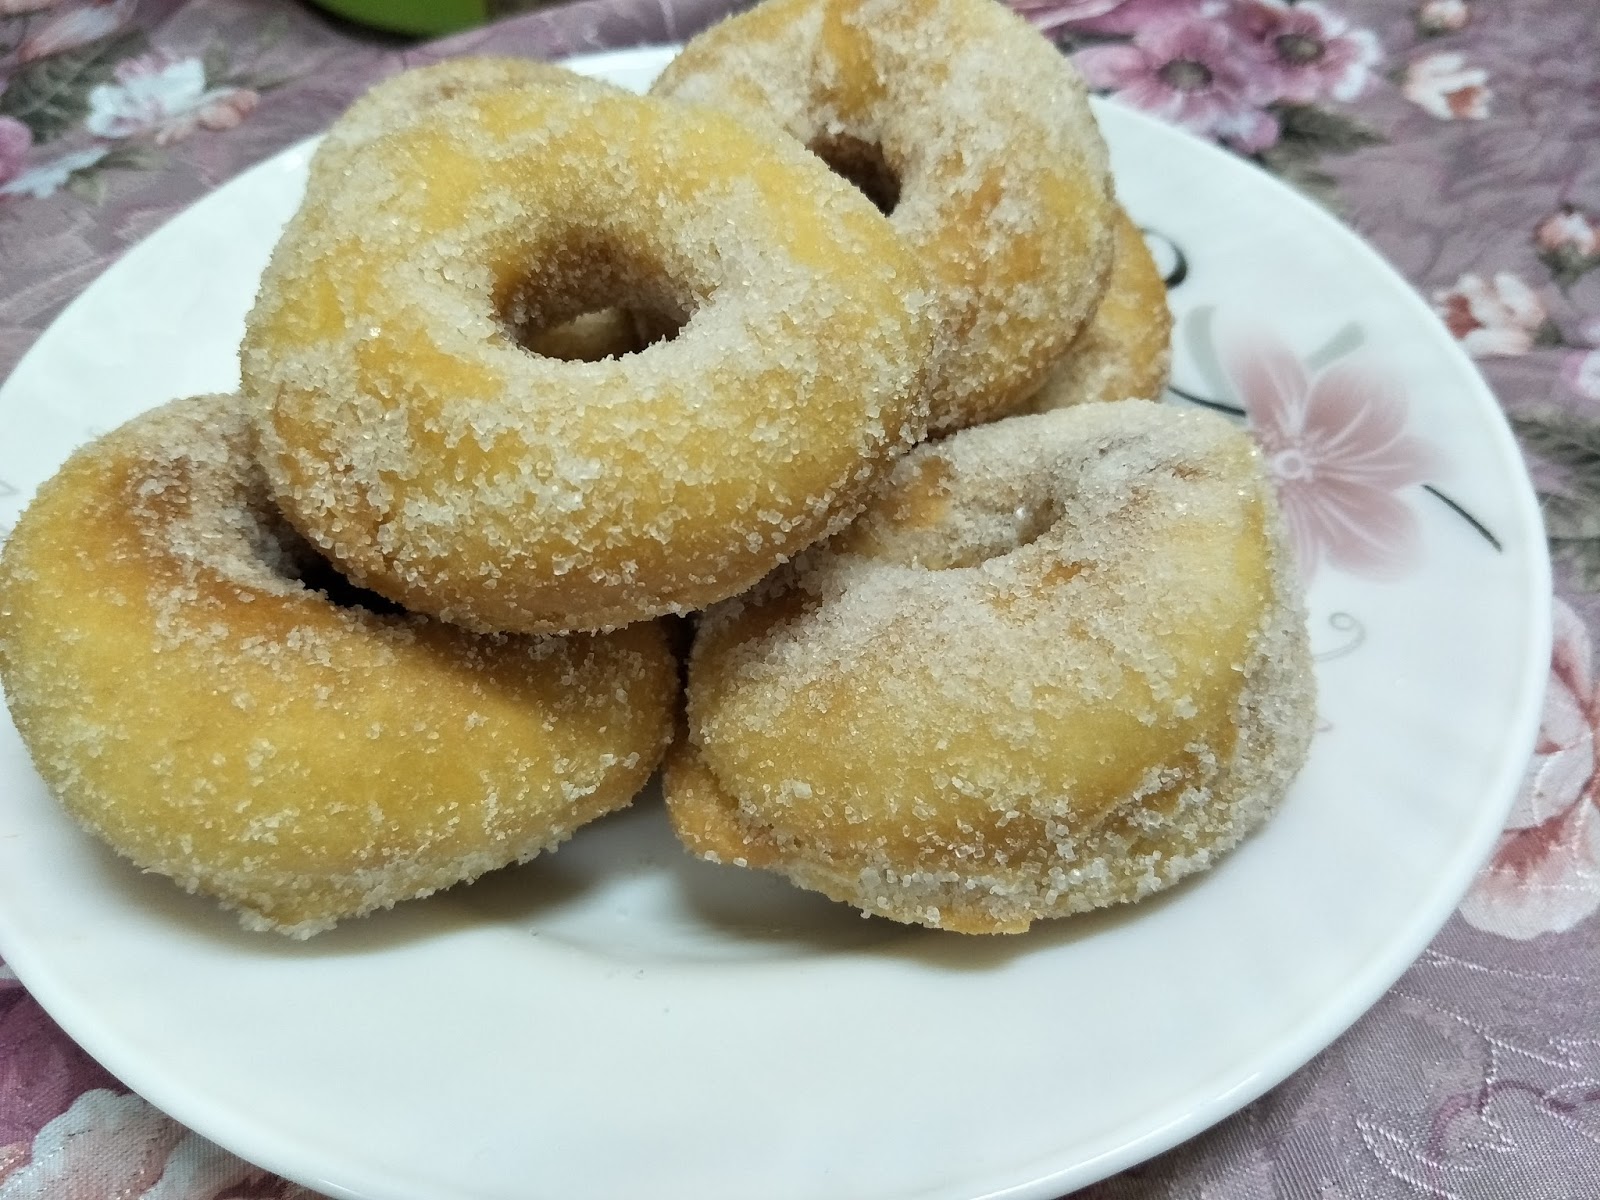 Resepi Donut Yang Mudah, Gebu dan Lembut - INILAH REALITI